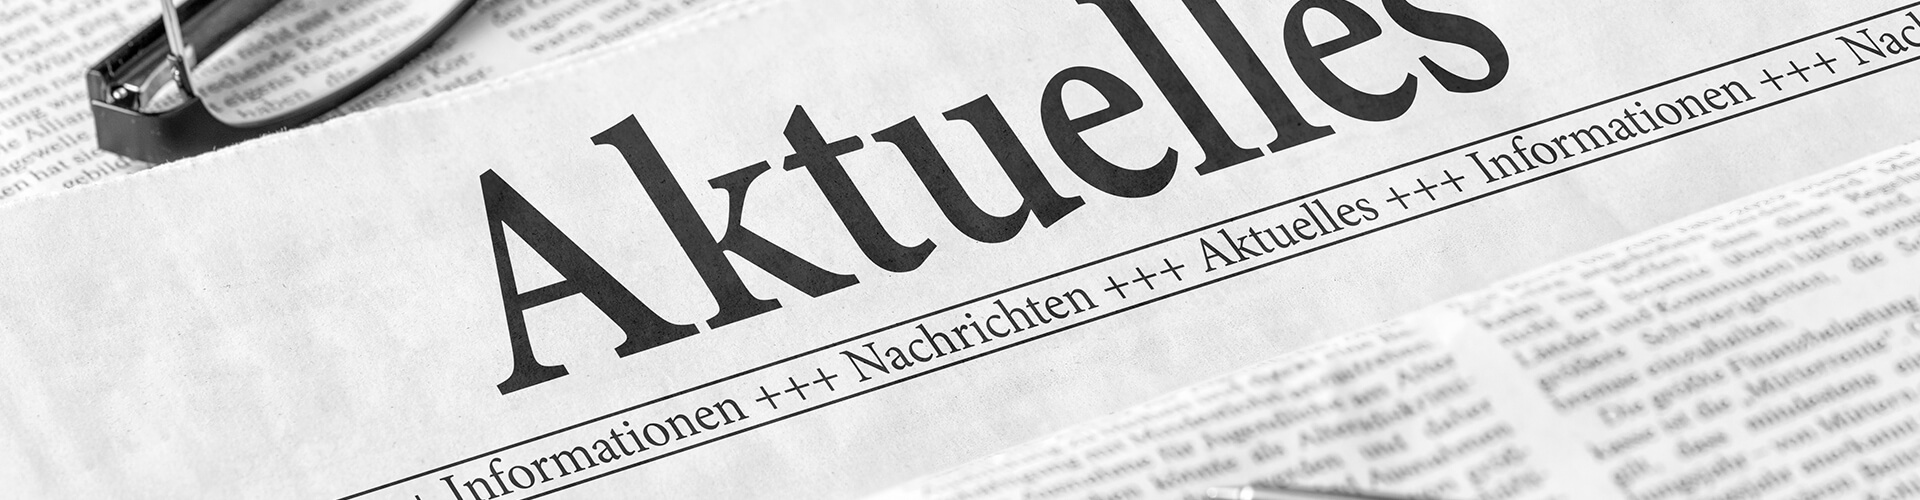 Unsere Dortmunder Steuerkanzlei hält Sie auf dem Laufenden - über alle Neuigkeiten, die für Sie als Mandanten interessant und relevant sind